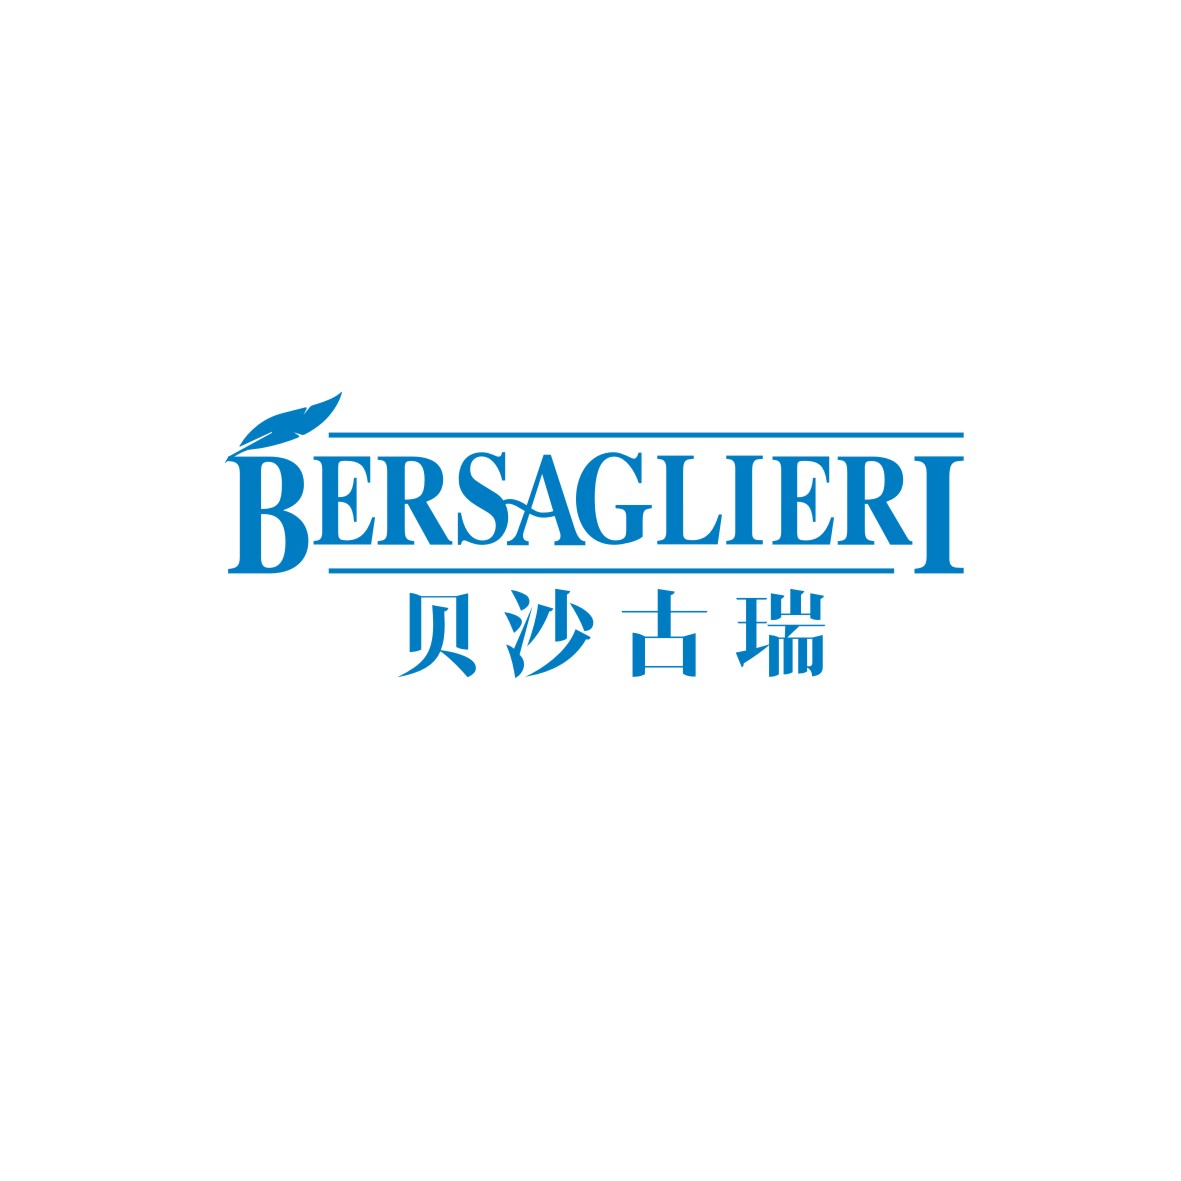 广州知麦网络科技有限公司商标贝沙古瑞 BERSAGLIERI（09类）商标买卖平台报价，上哪个平台最省钱？